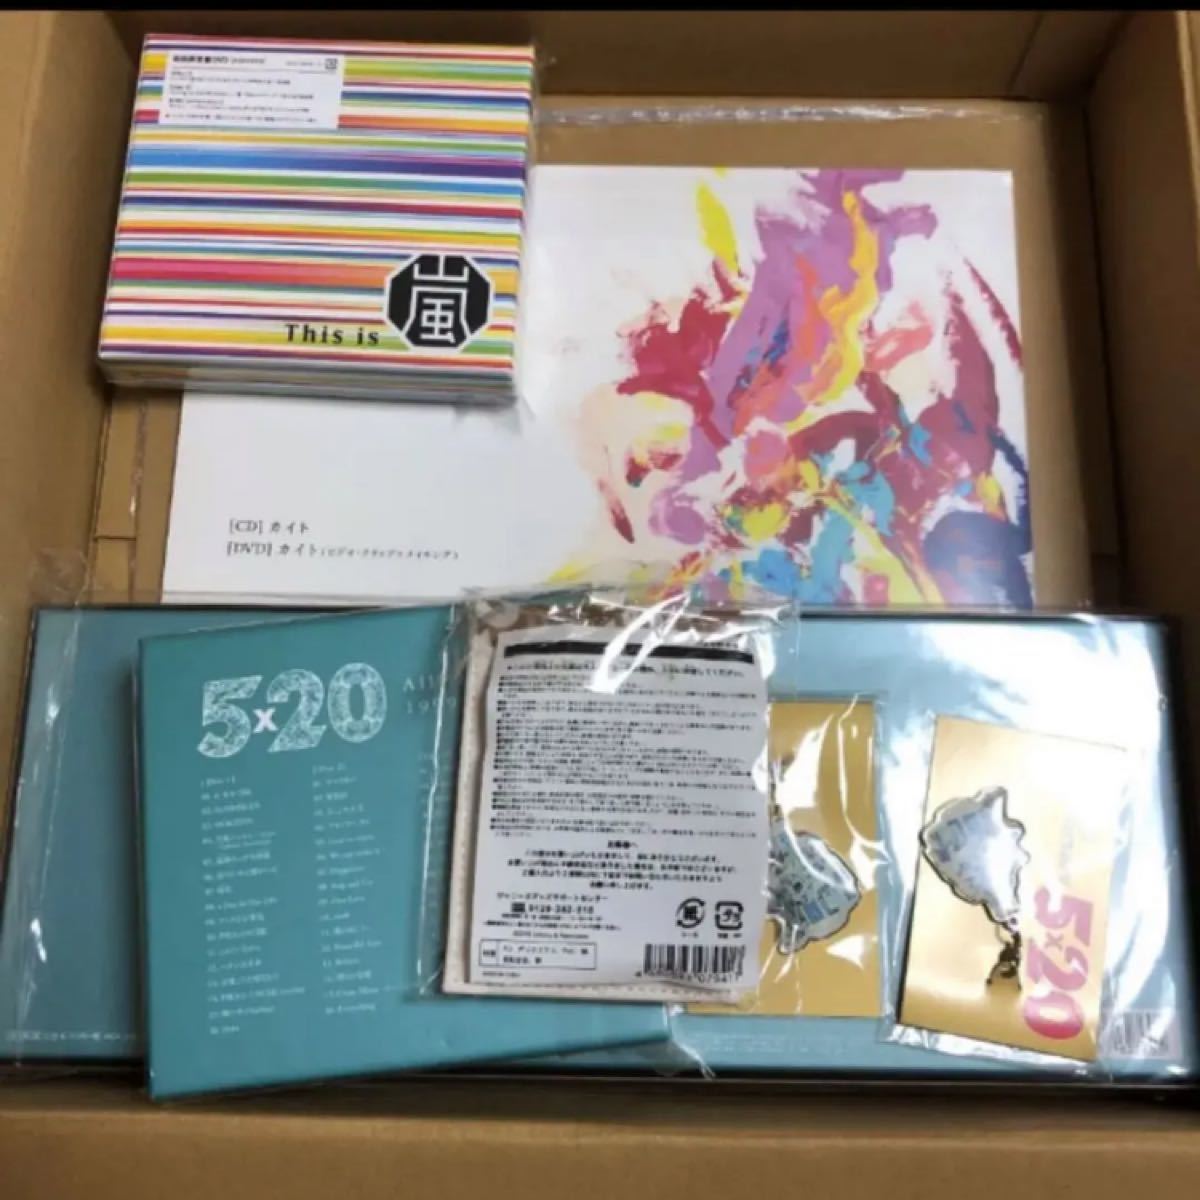 嵐 グッズ 5×20 カイト カルタ 限定 チャーム パスケース CD DVD